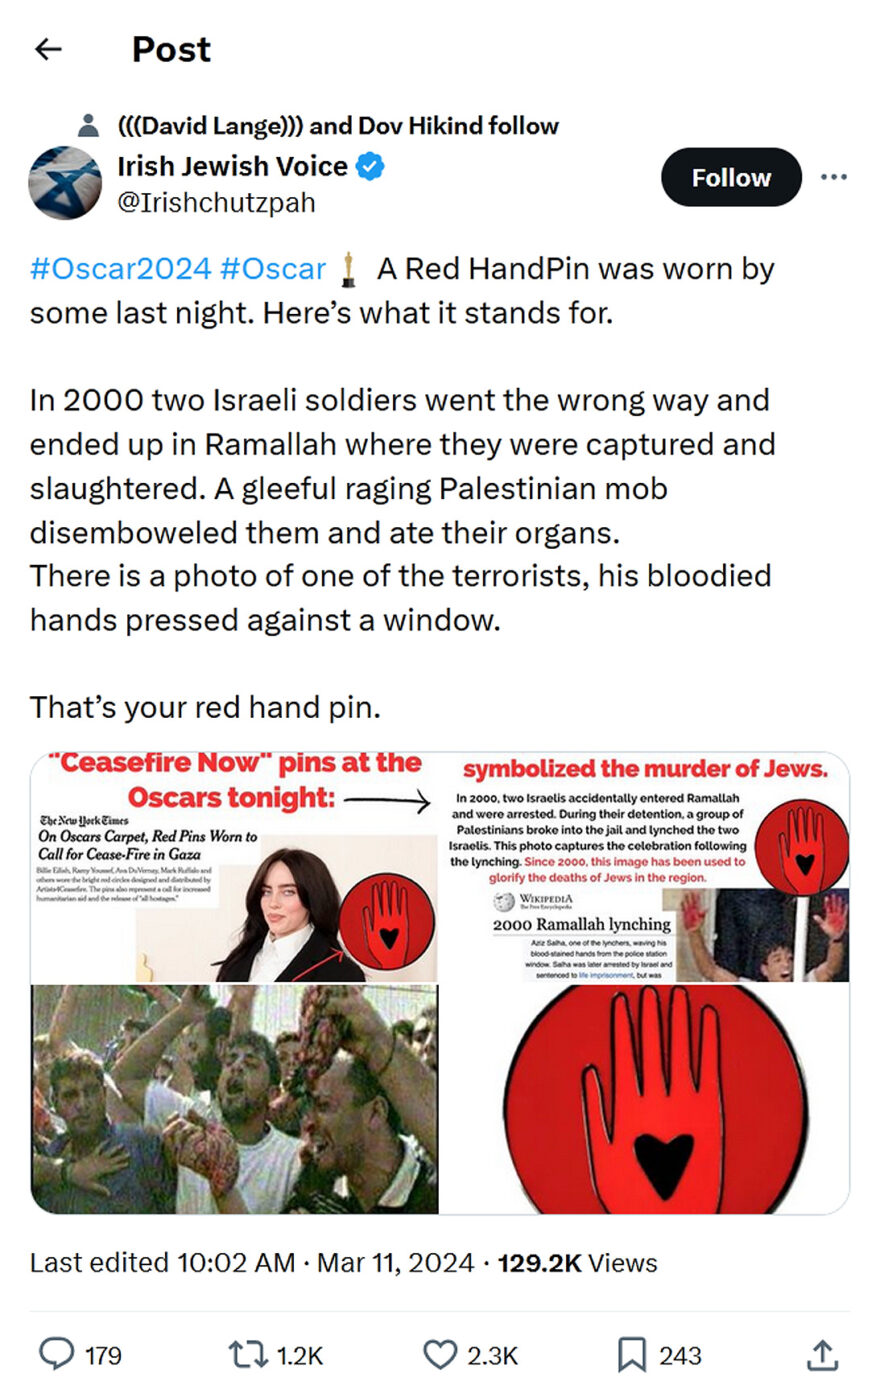 Irish Jewish Voice-tweet-11March2024-Red HandPin stands for murder Jews